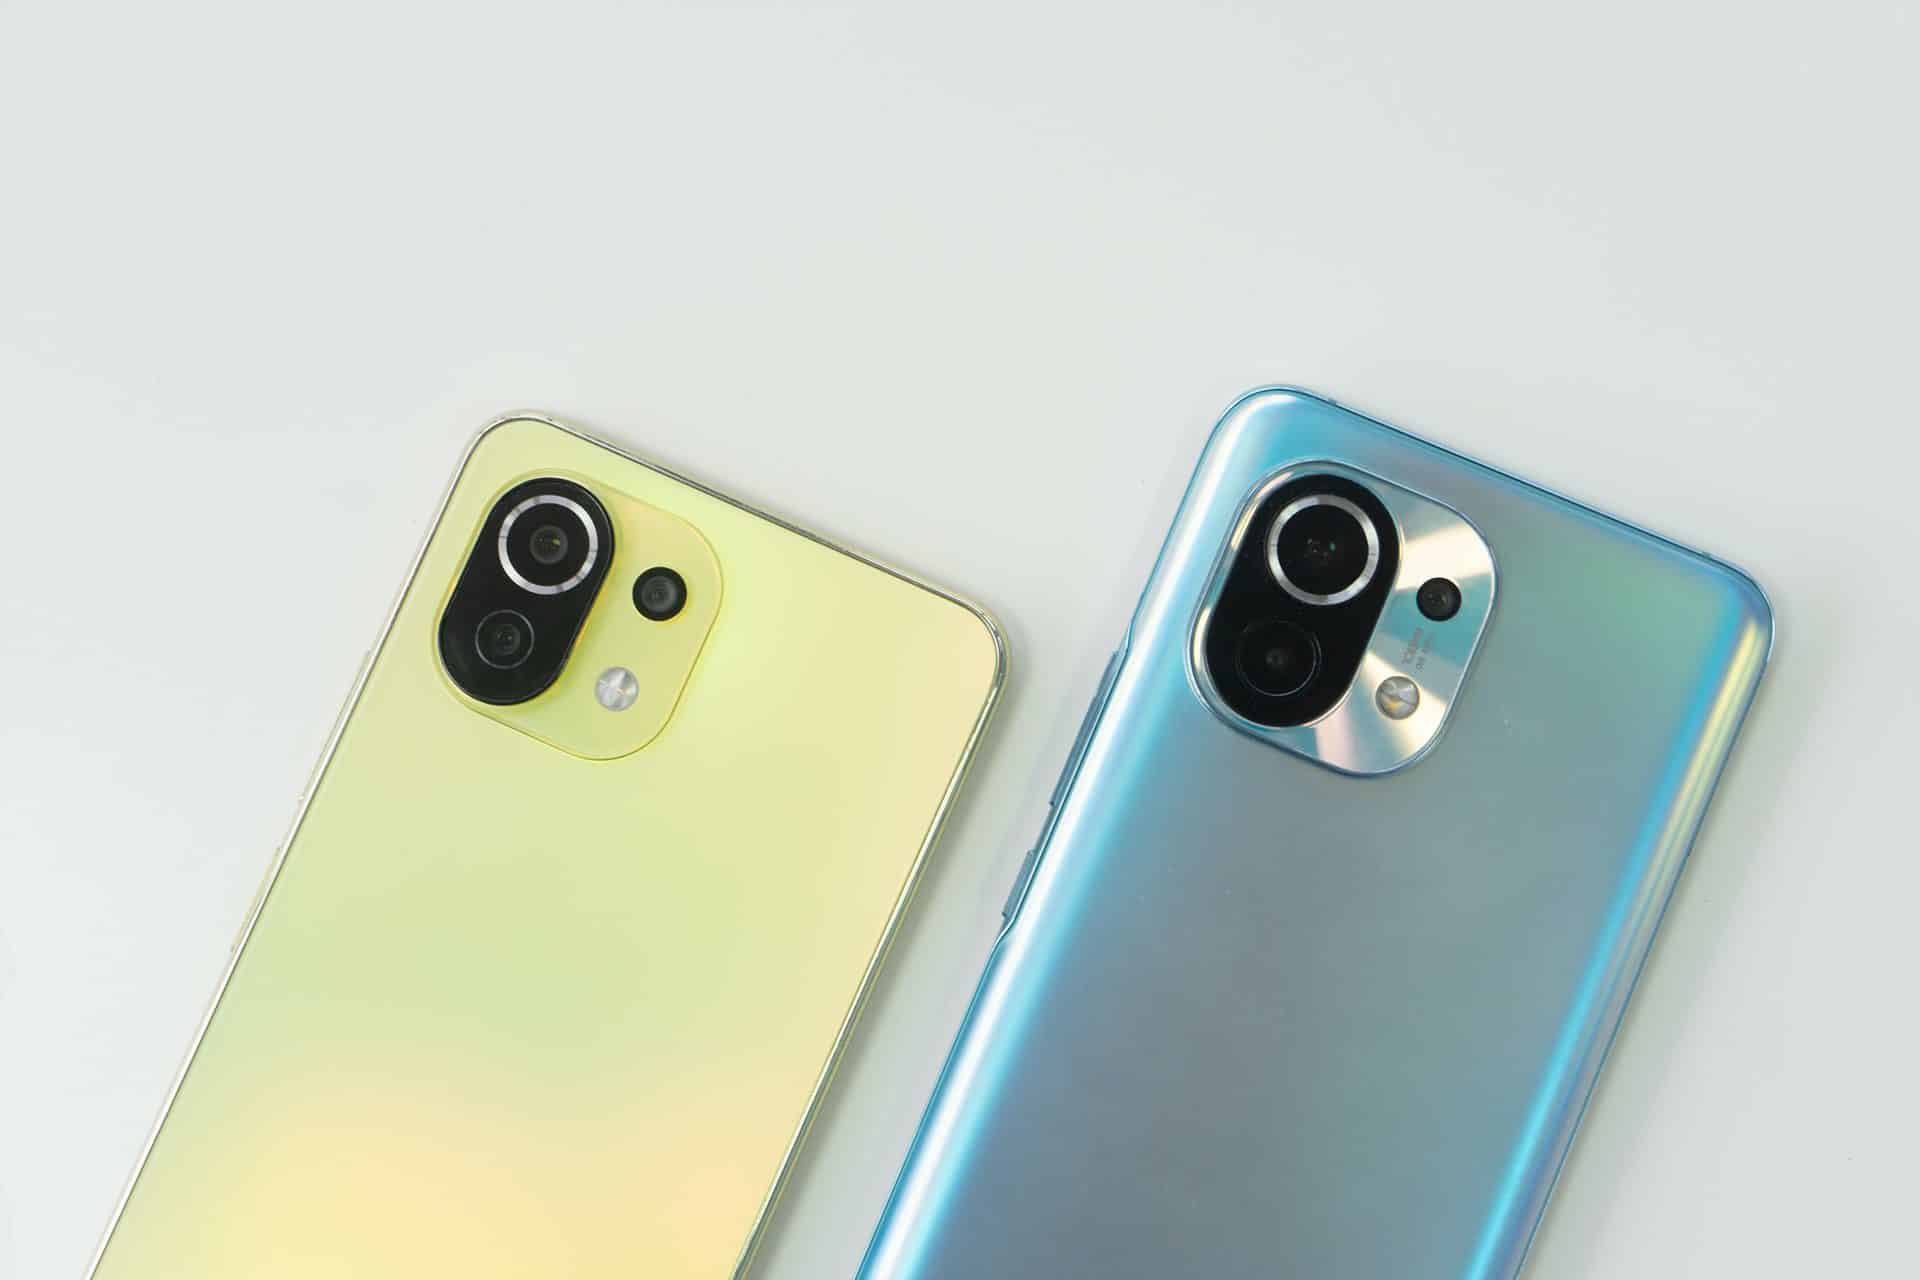 Smartfóny od spoločnosti Xiaomi v zelenej a modrej farbe